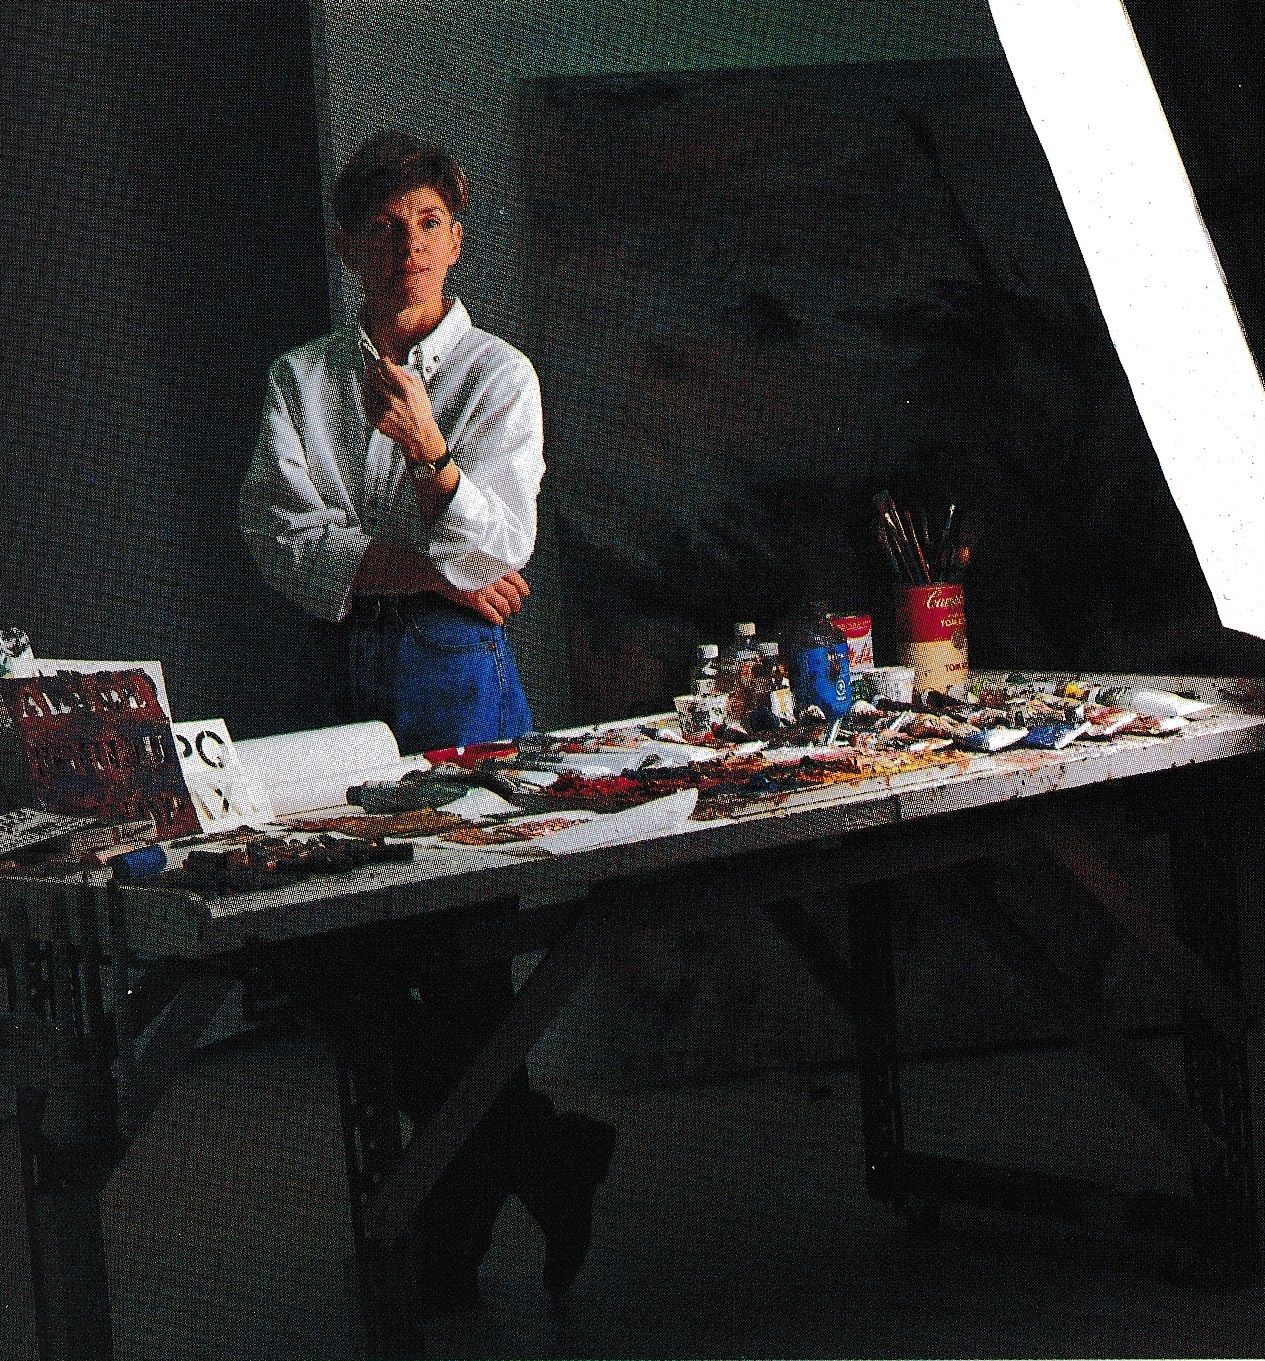 Louise Robert dans son atelier rue de Bullion, Montréal, 1991, photo d’André Doyon dans Myriam GAGNON, « Artistes à l’œuvre », Elle-Québec (Montréal), no20, avril 1991, p. 132.